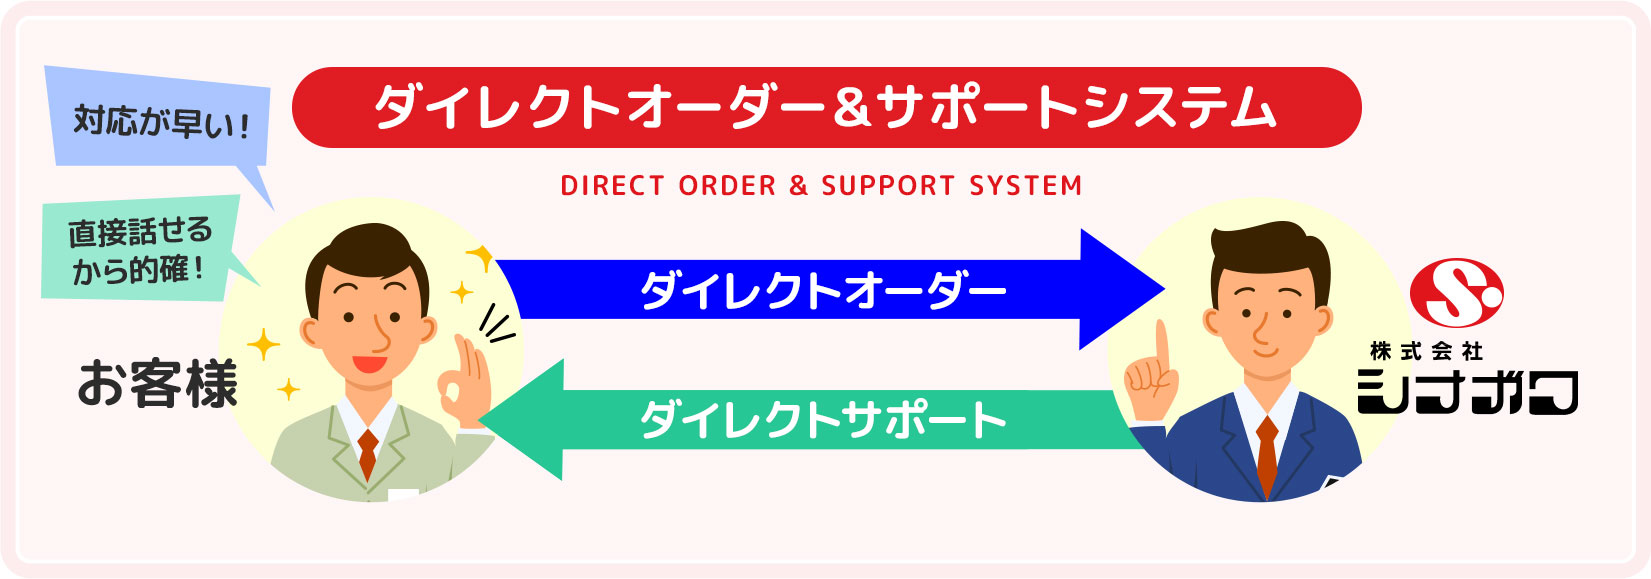 ダイレクトオーダー＆サポートシステム概念図